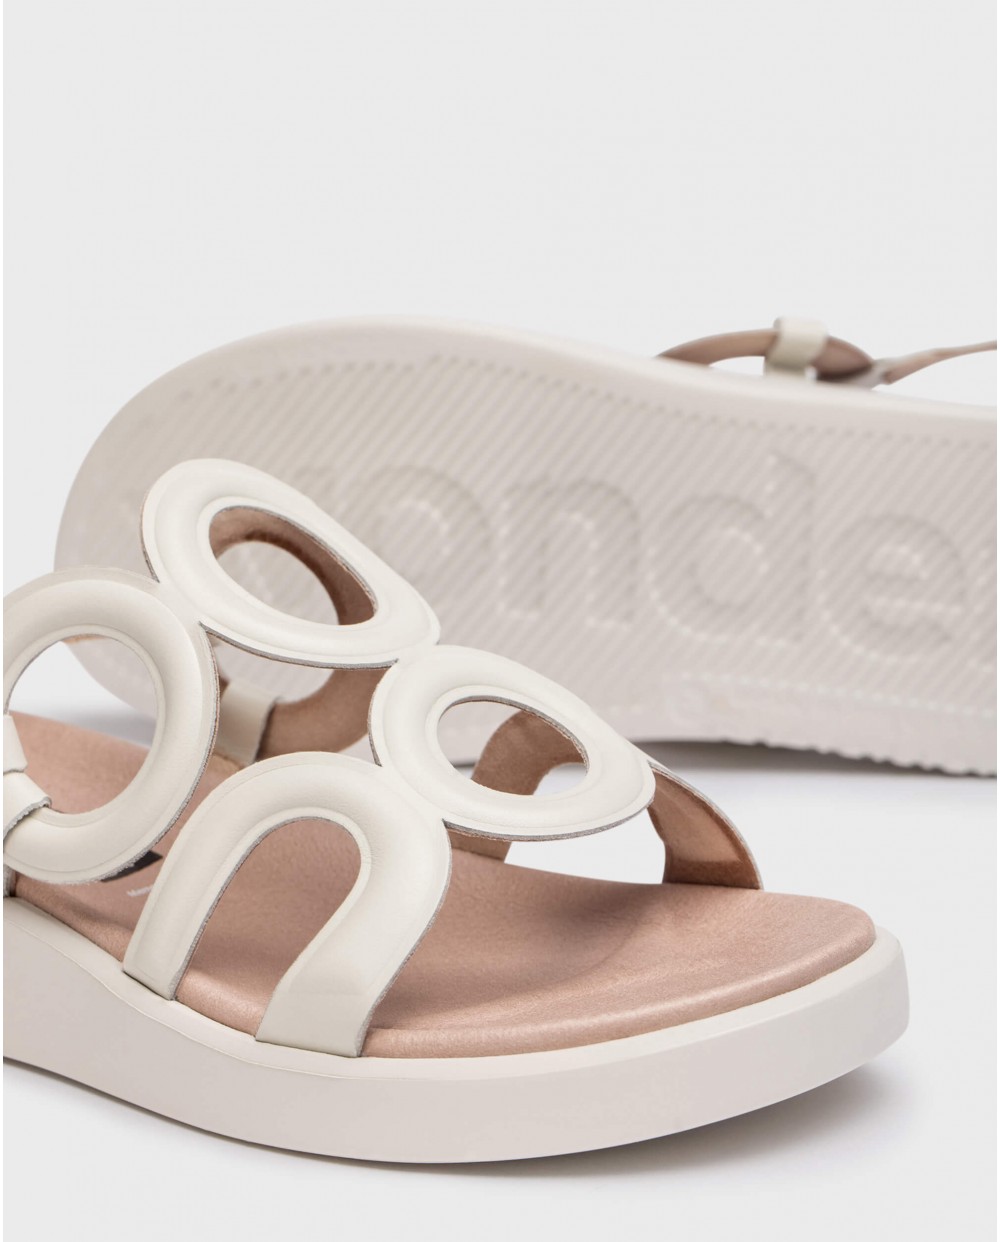 White Arizona sandals